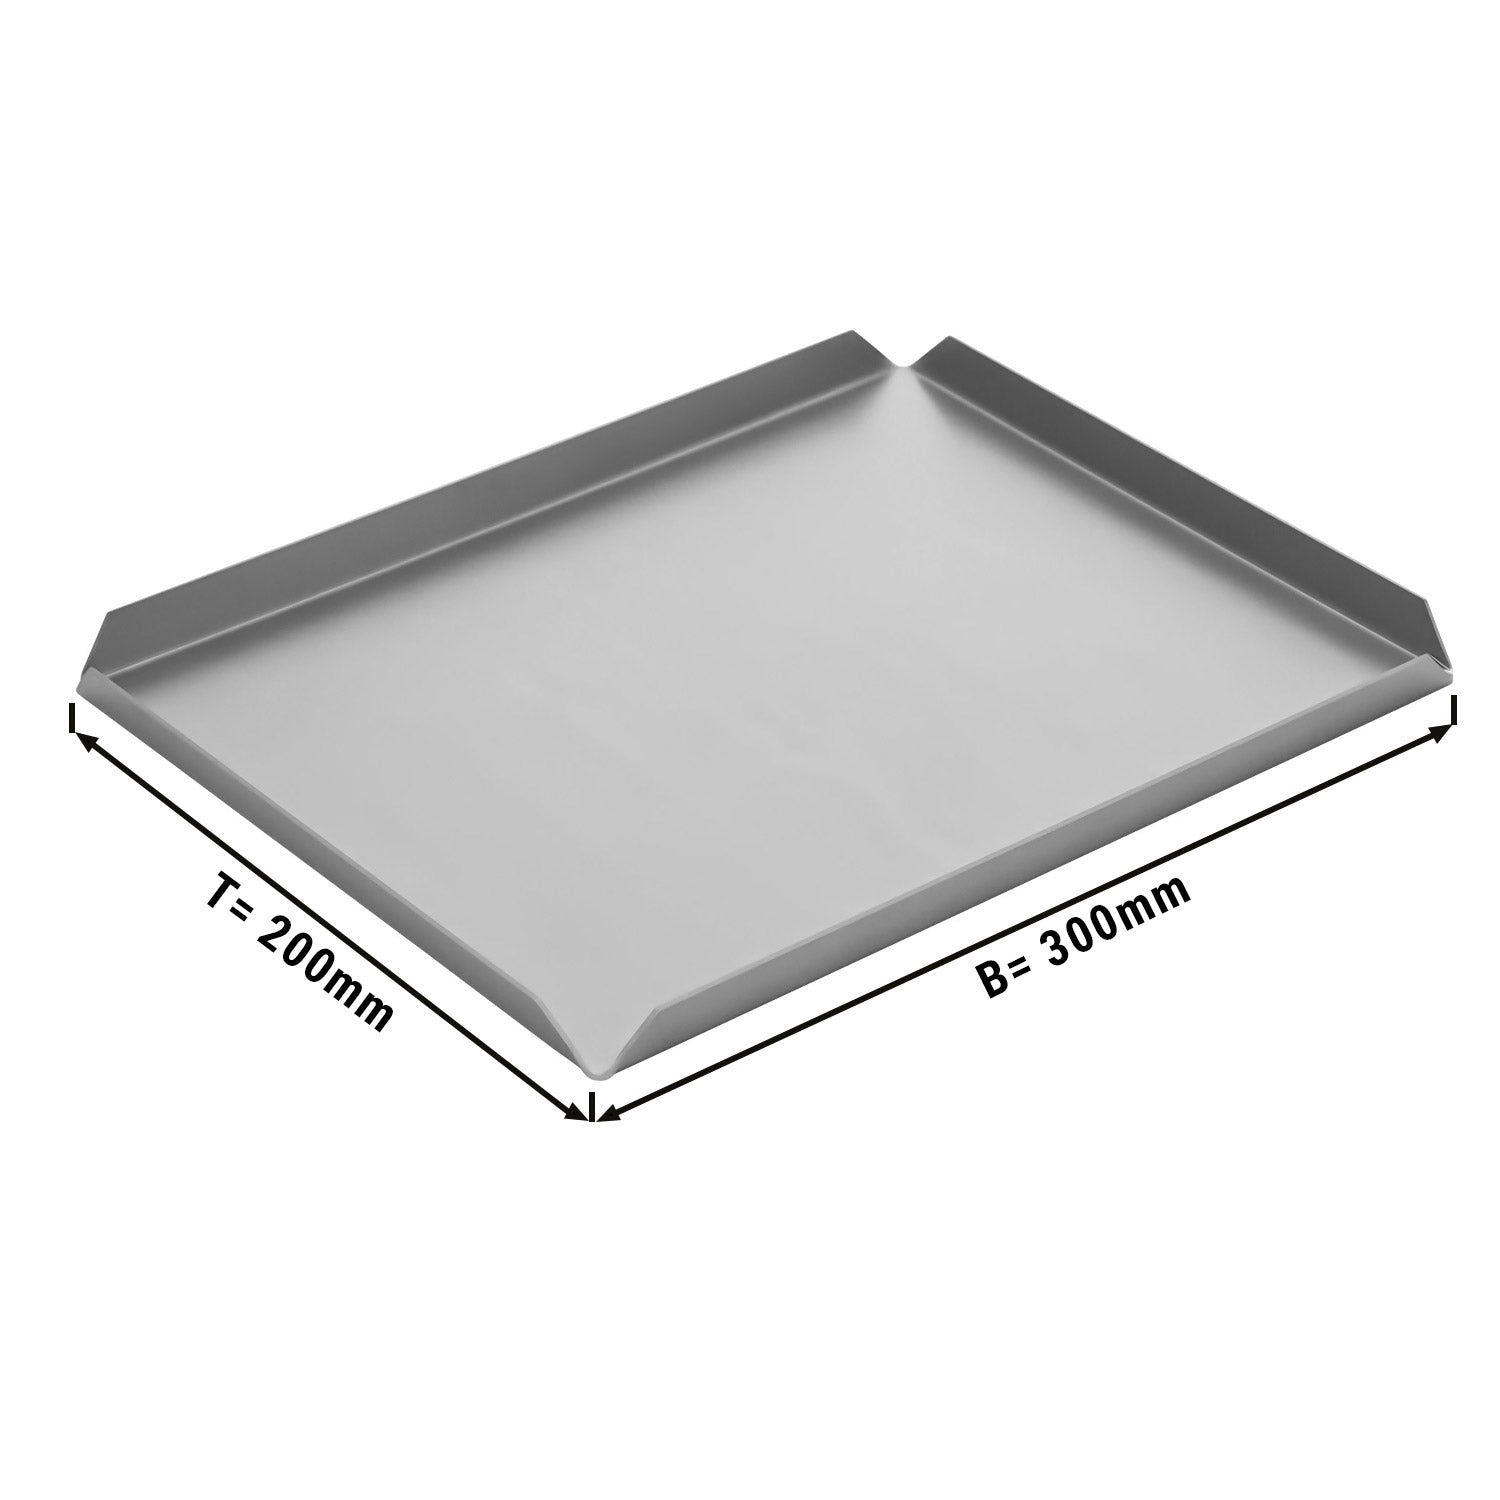 (5 бр.) Алуминиева табелка за сладкарски изделия и презентации - 300 x 200 x 10 mm - алуминий